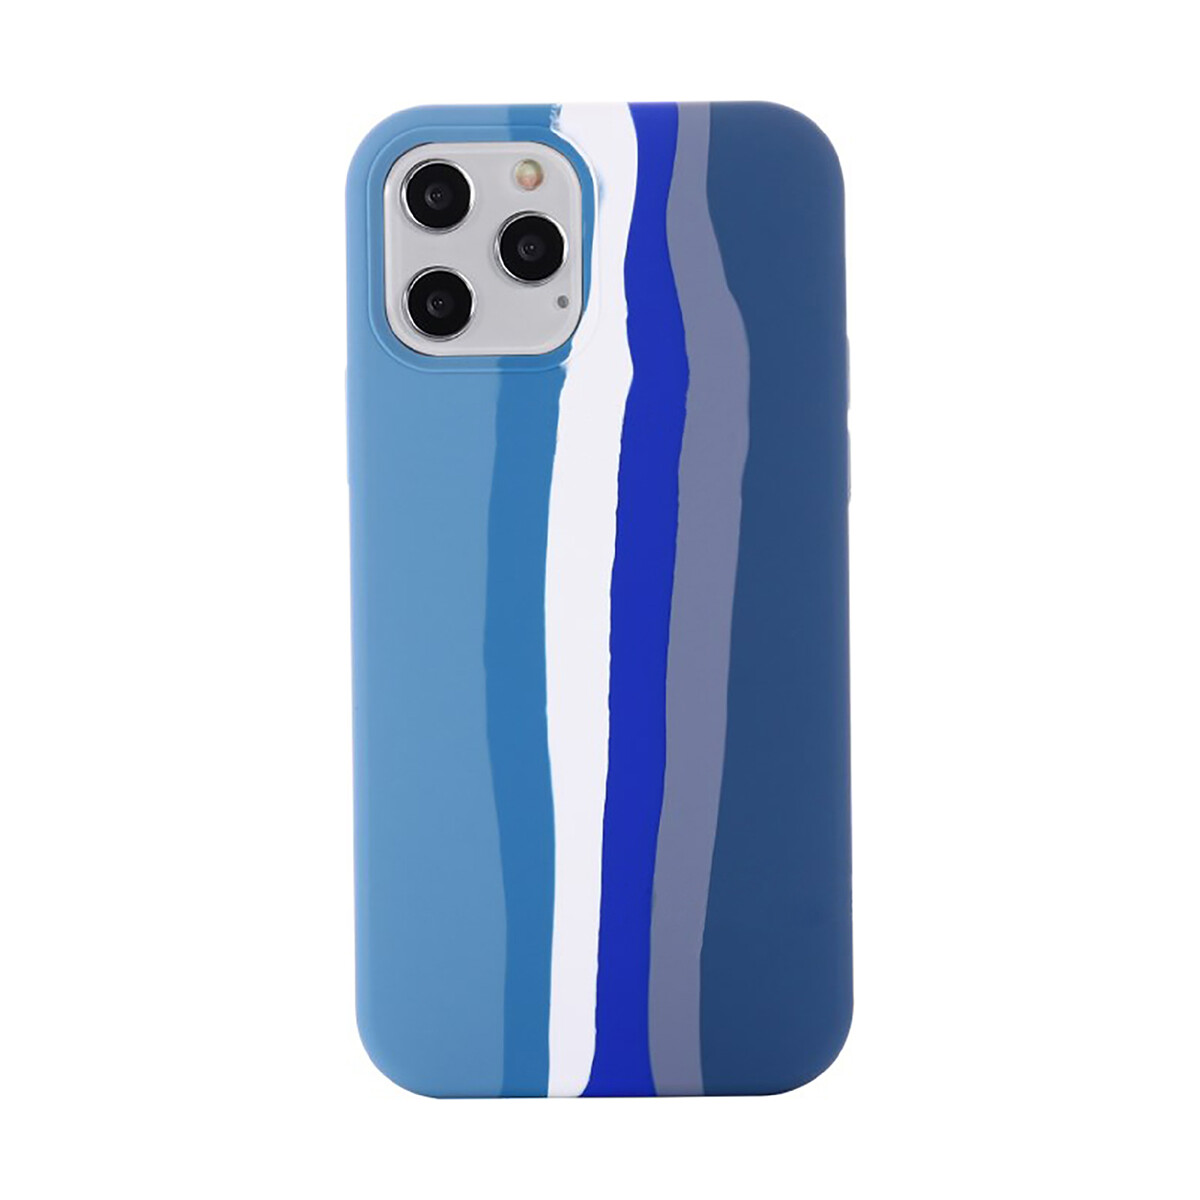 Protector case de silicona para iphone 11 pro Azul